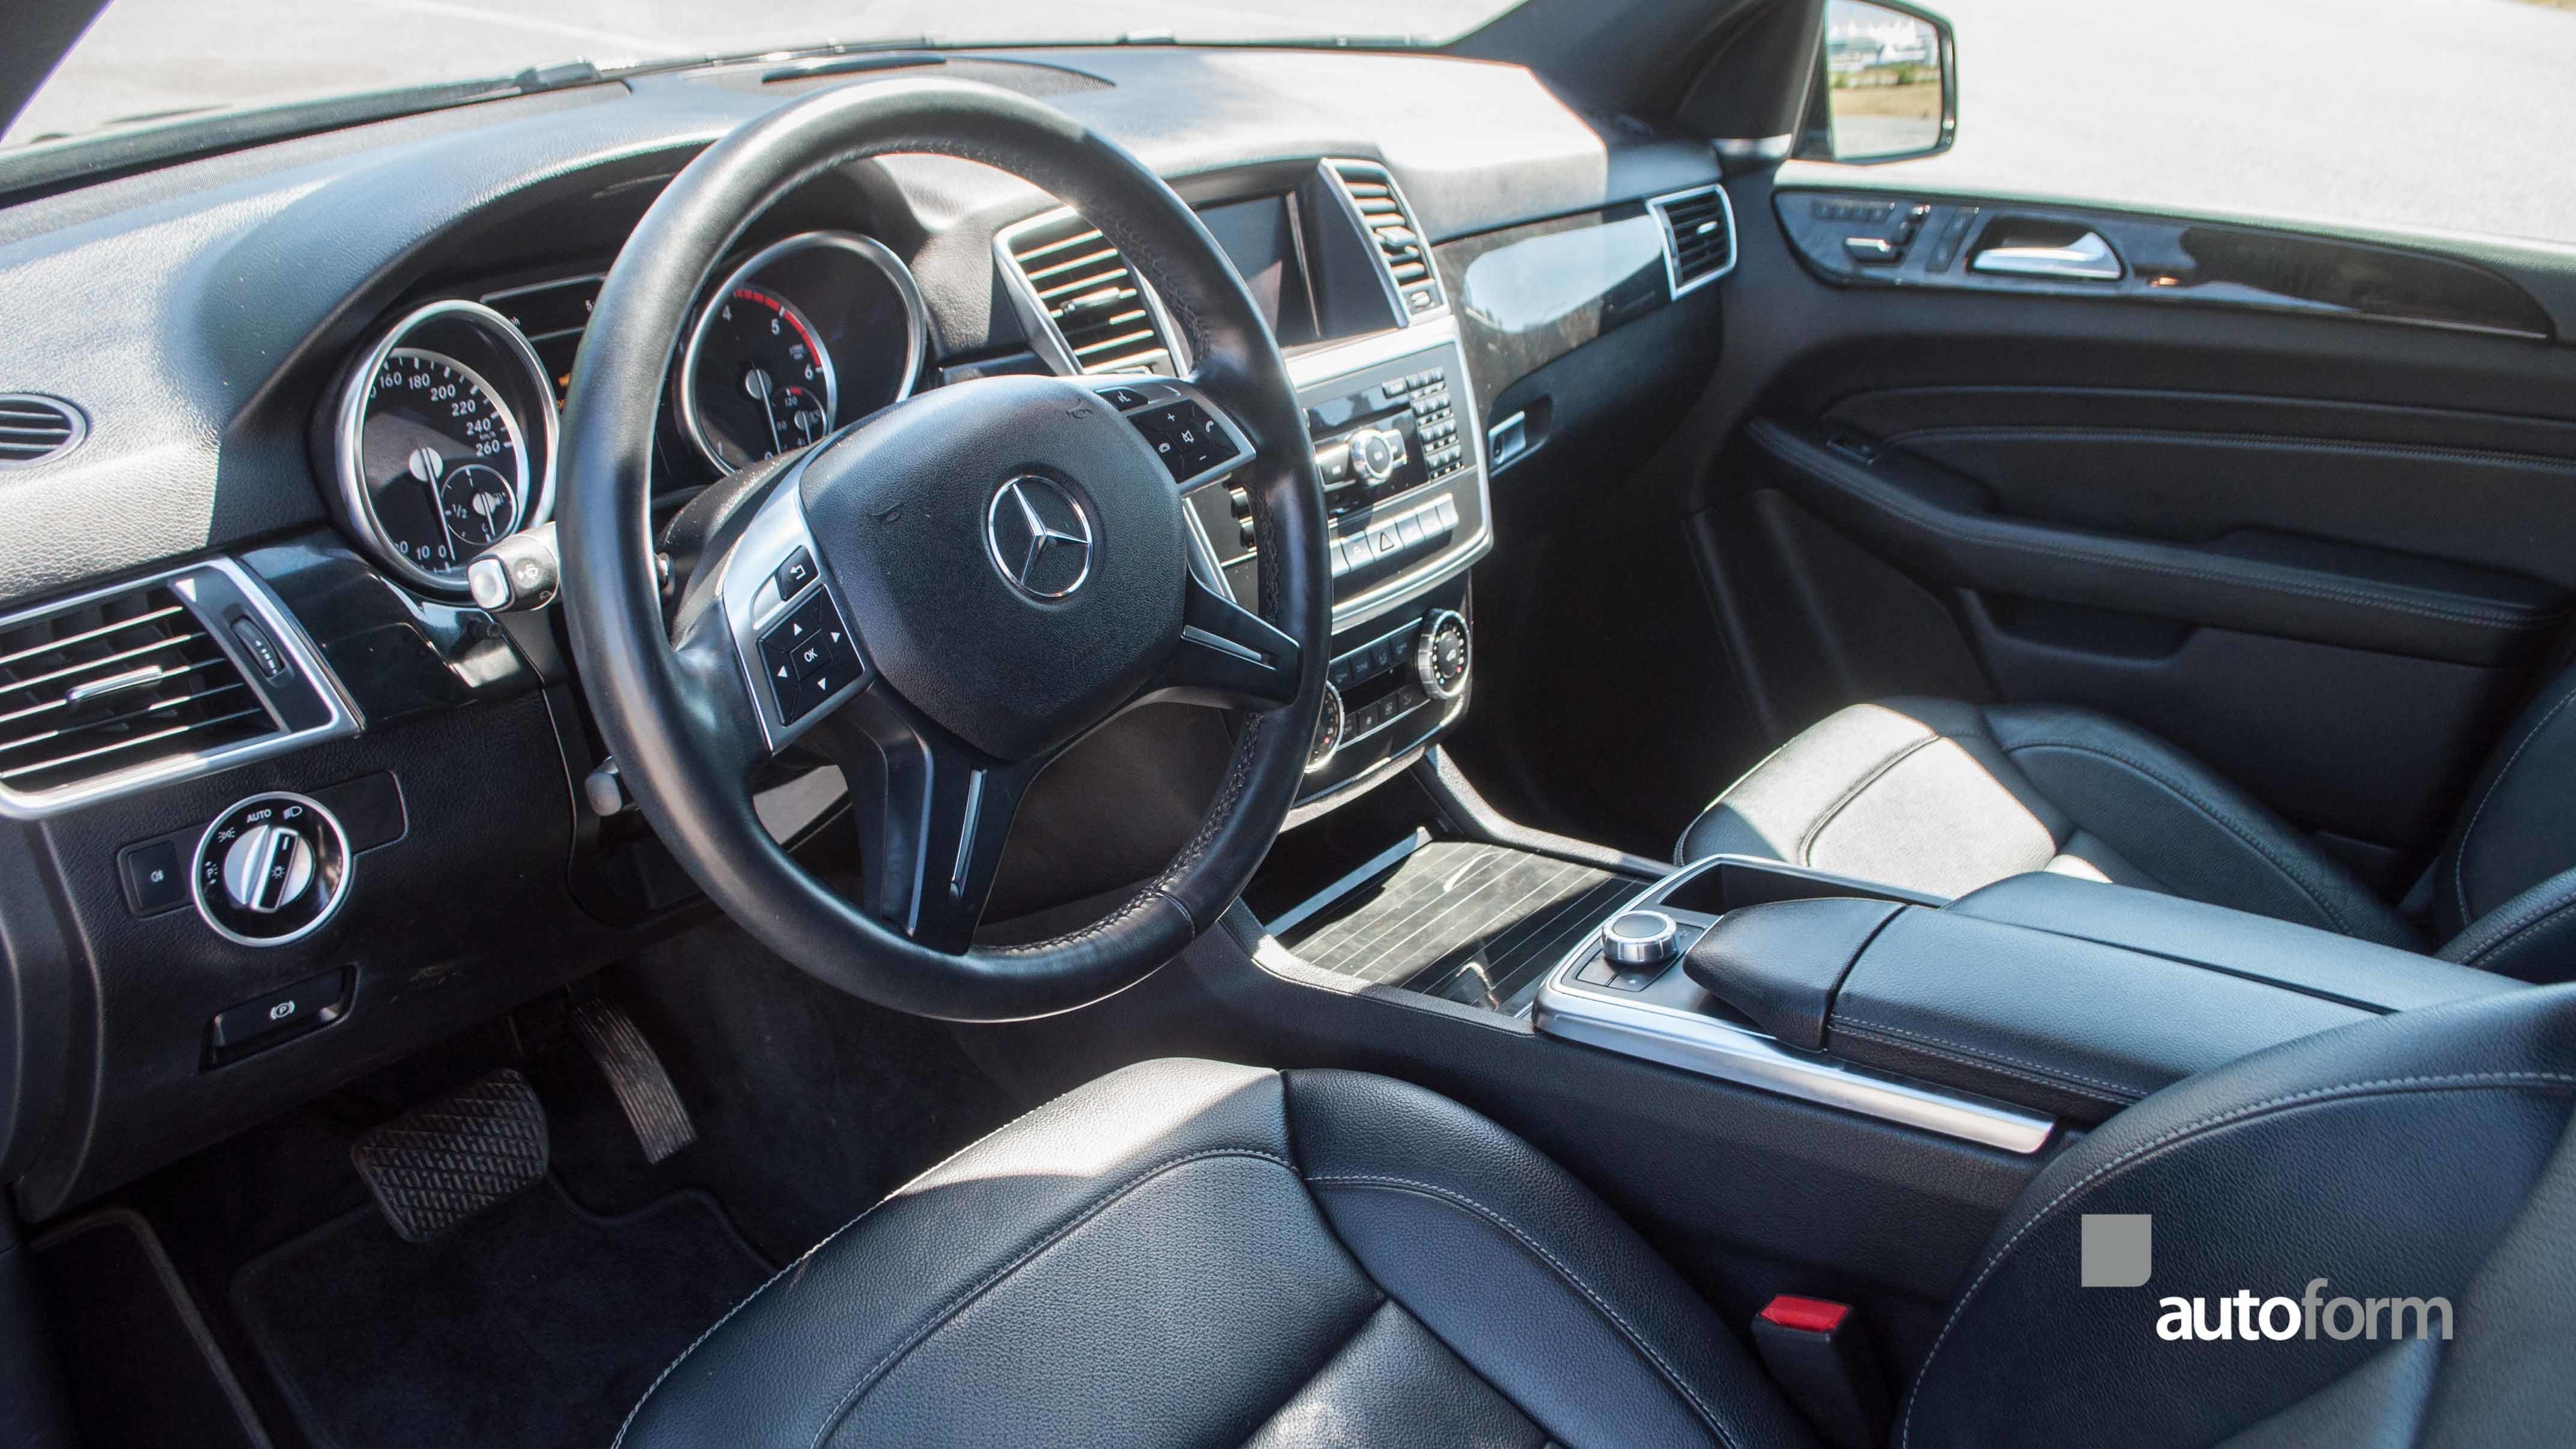 2015 Mercedes Benz Ml350 Bluetec 4matic Autoform